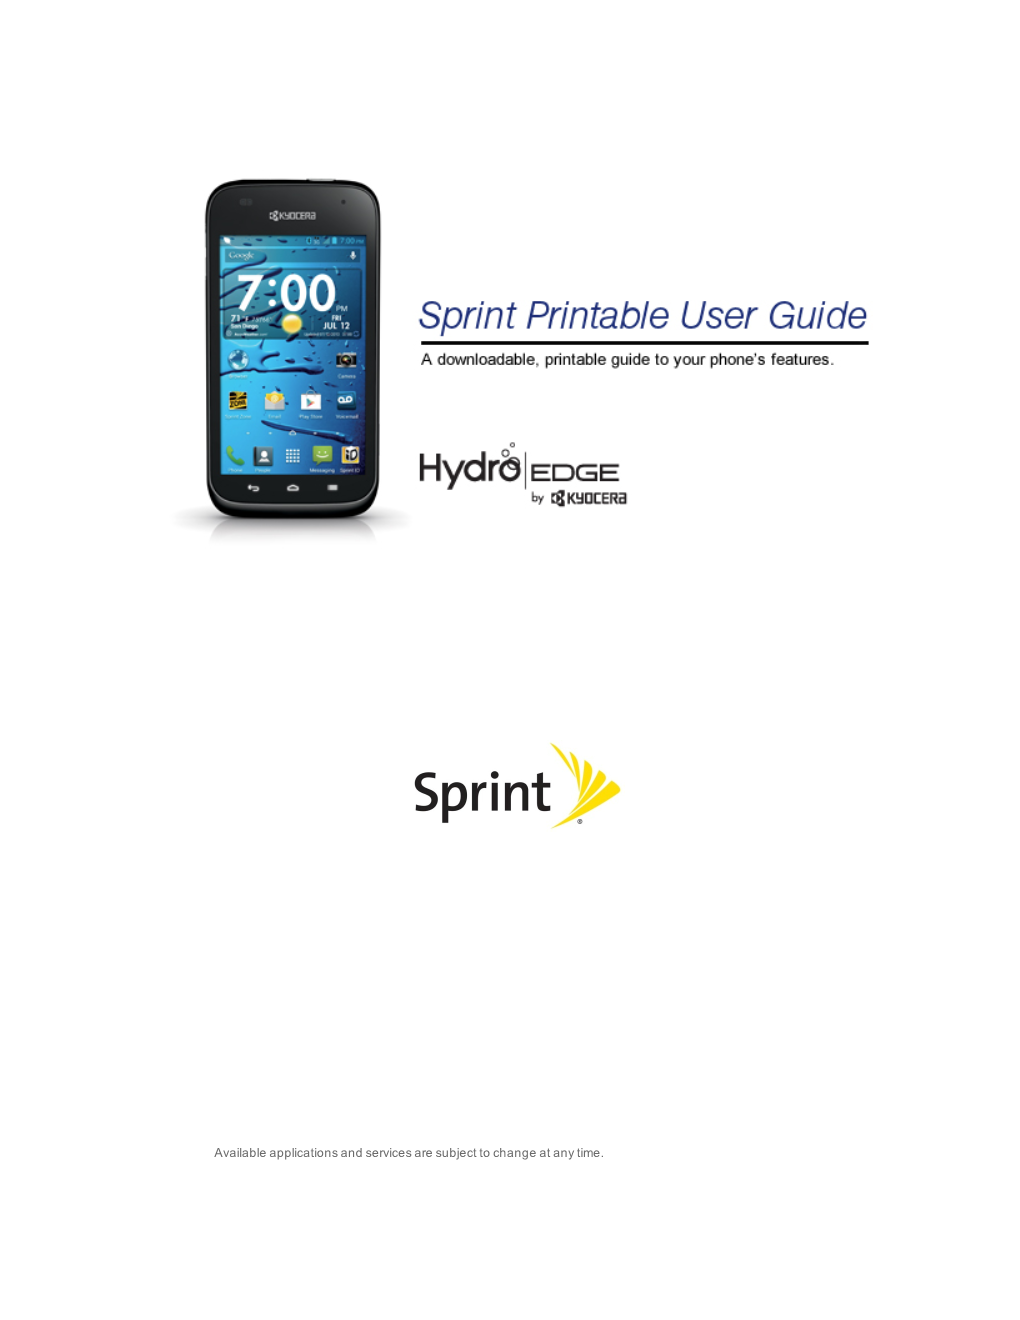 Kyocera Hydro EDGE User Guide